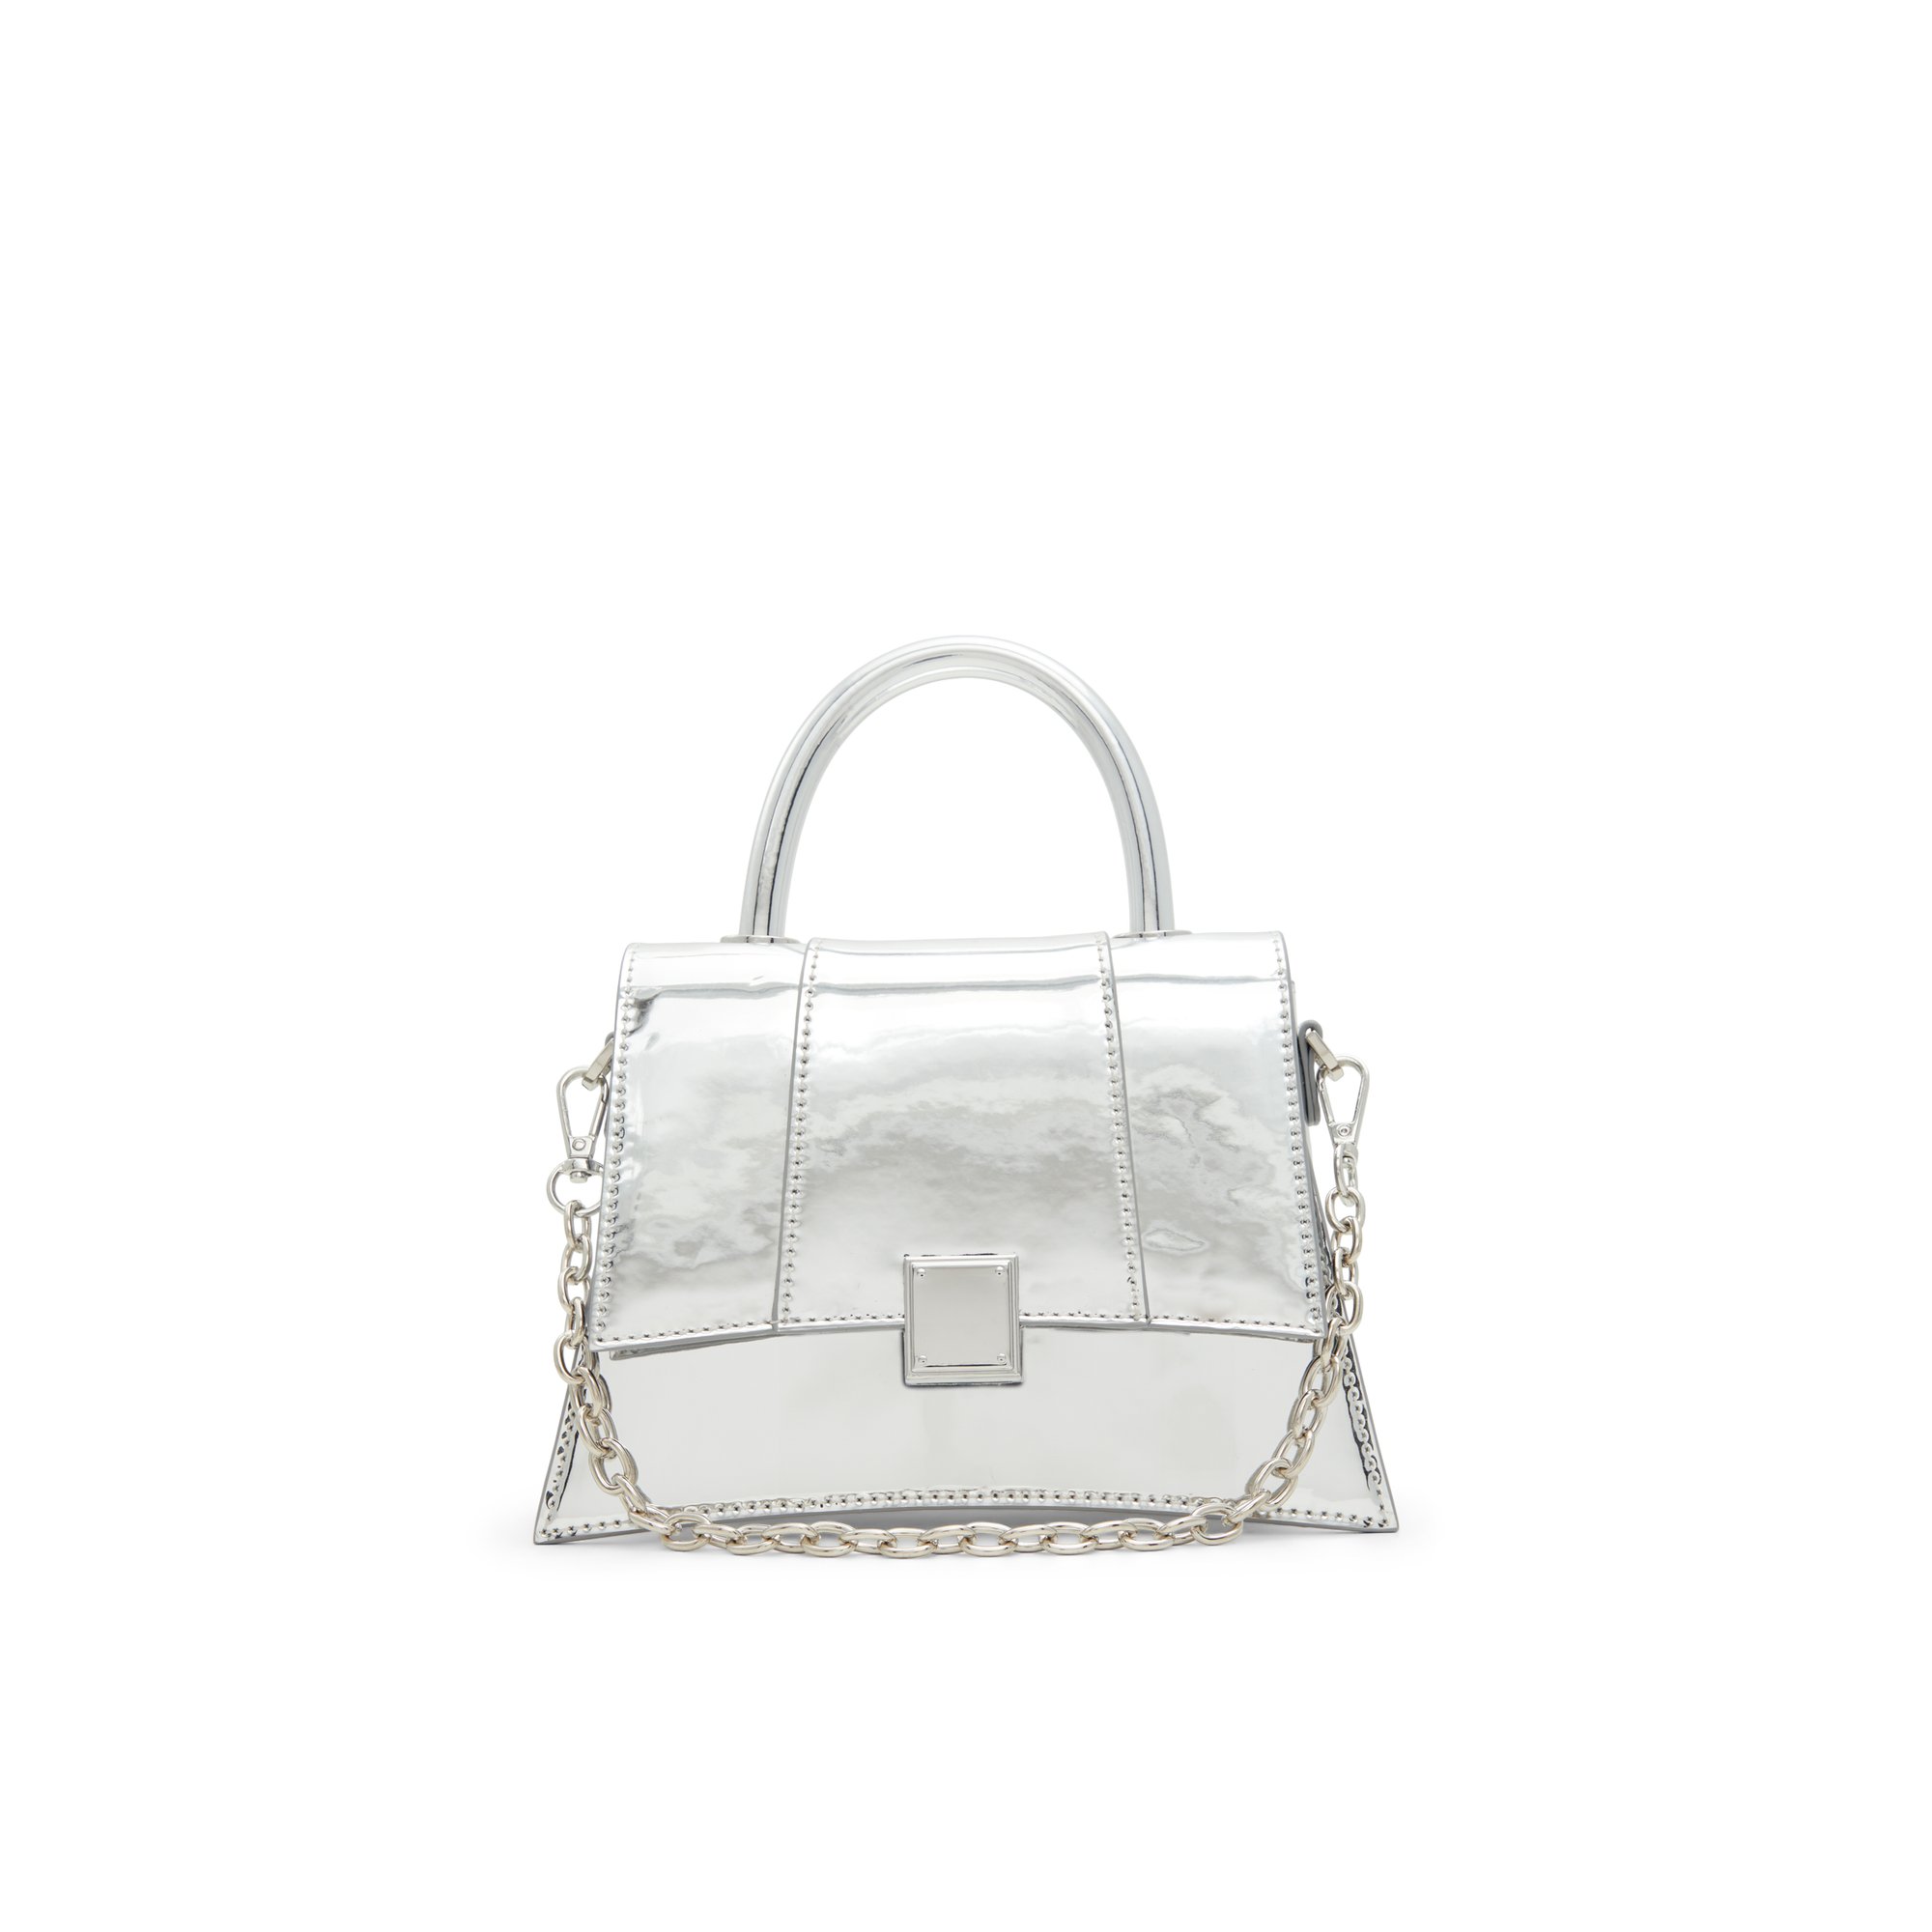 ALDO Kindraax - Women's Top Handle Handbag - Silver